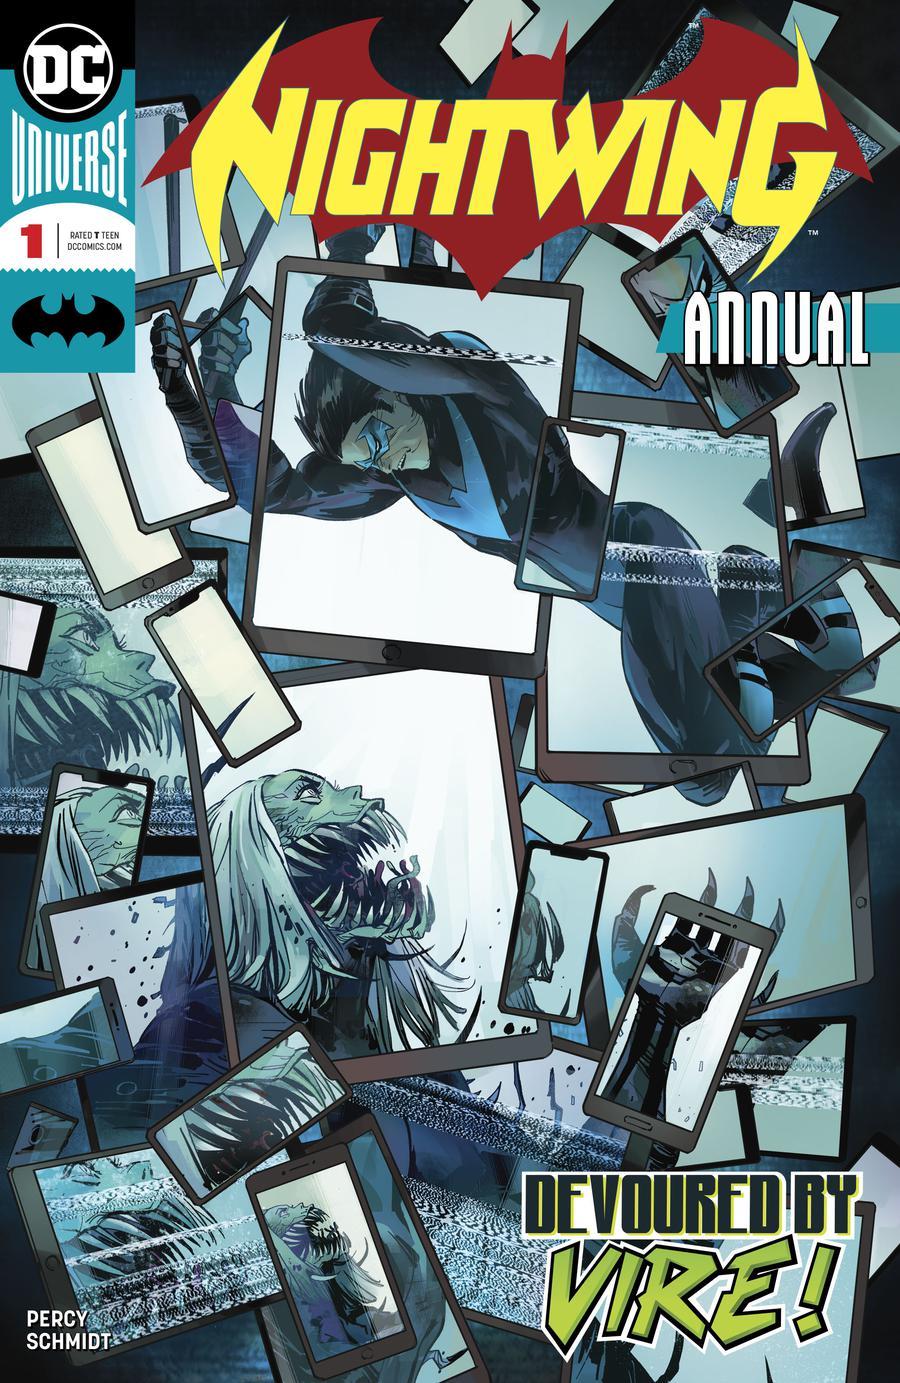 Nightwing Vol. 4 Annual #1